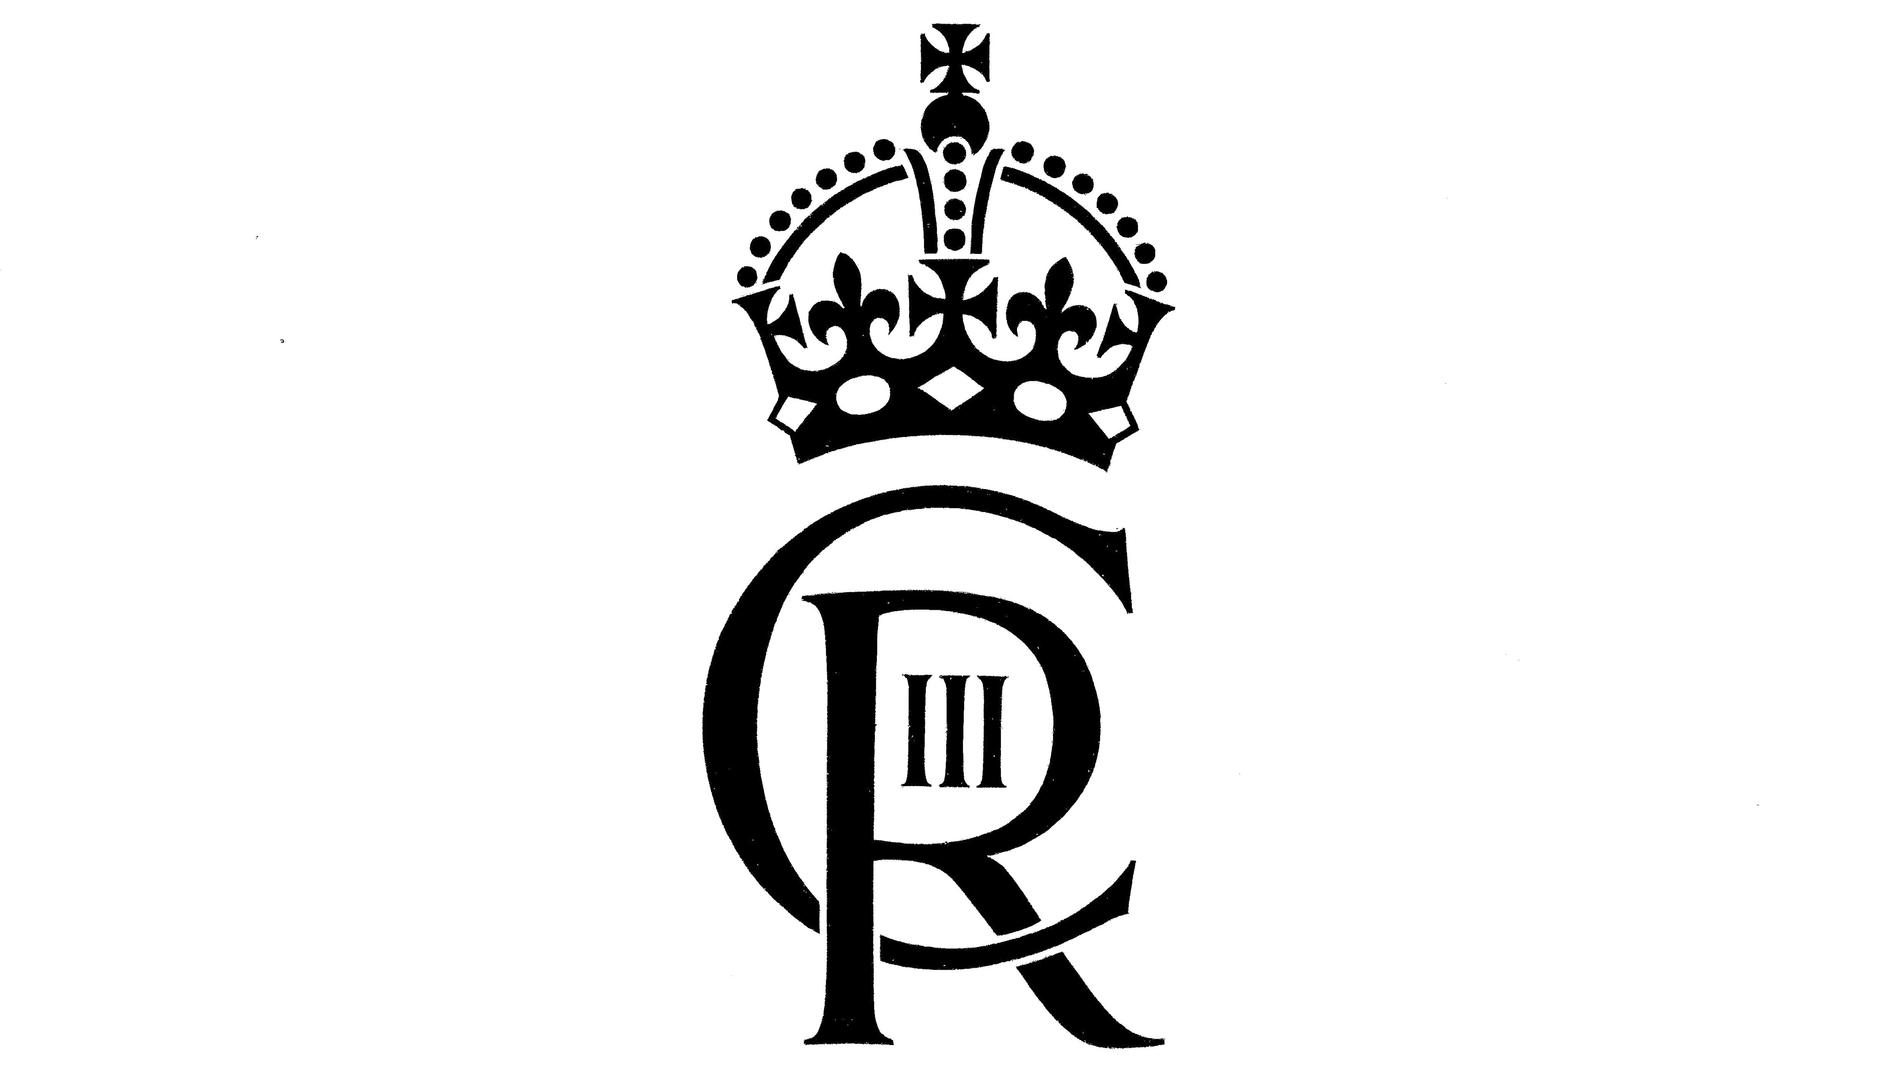 Den brittiska kungens monogram.